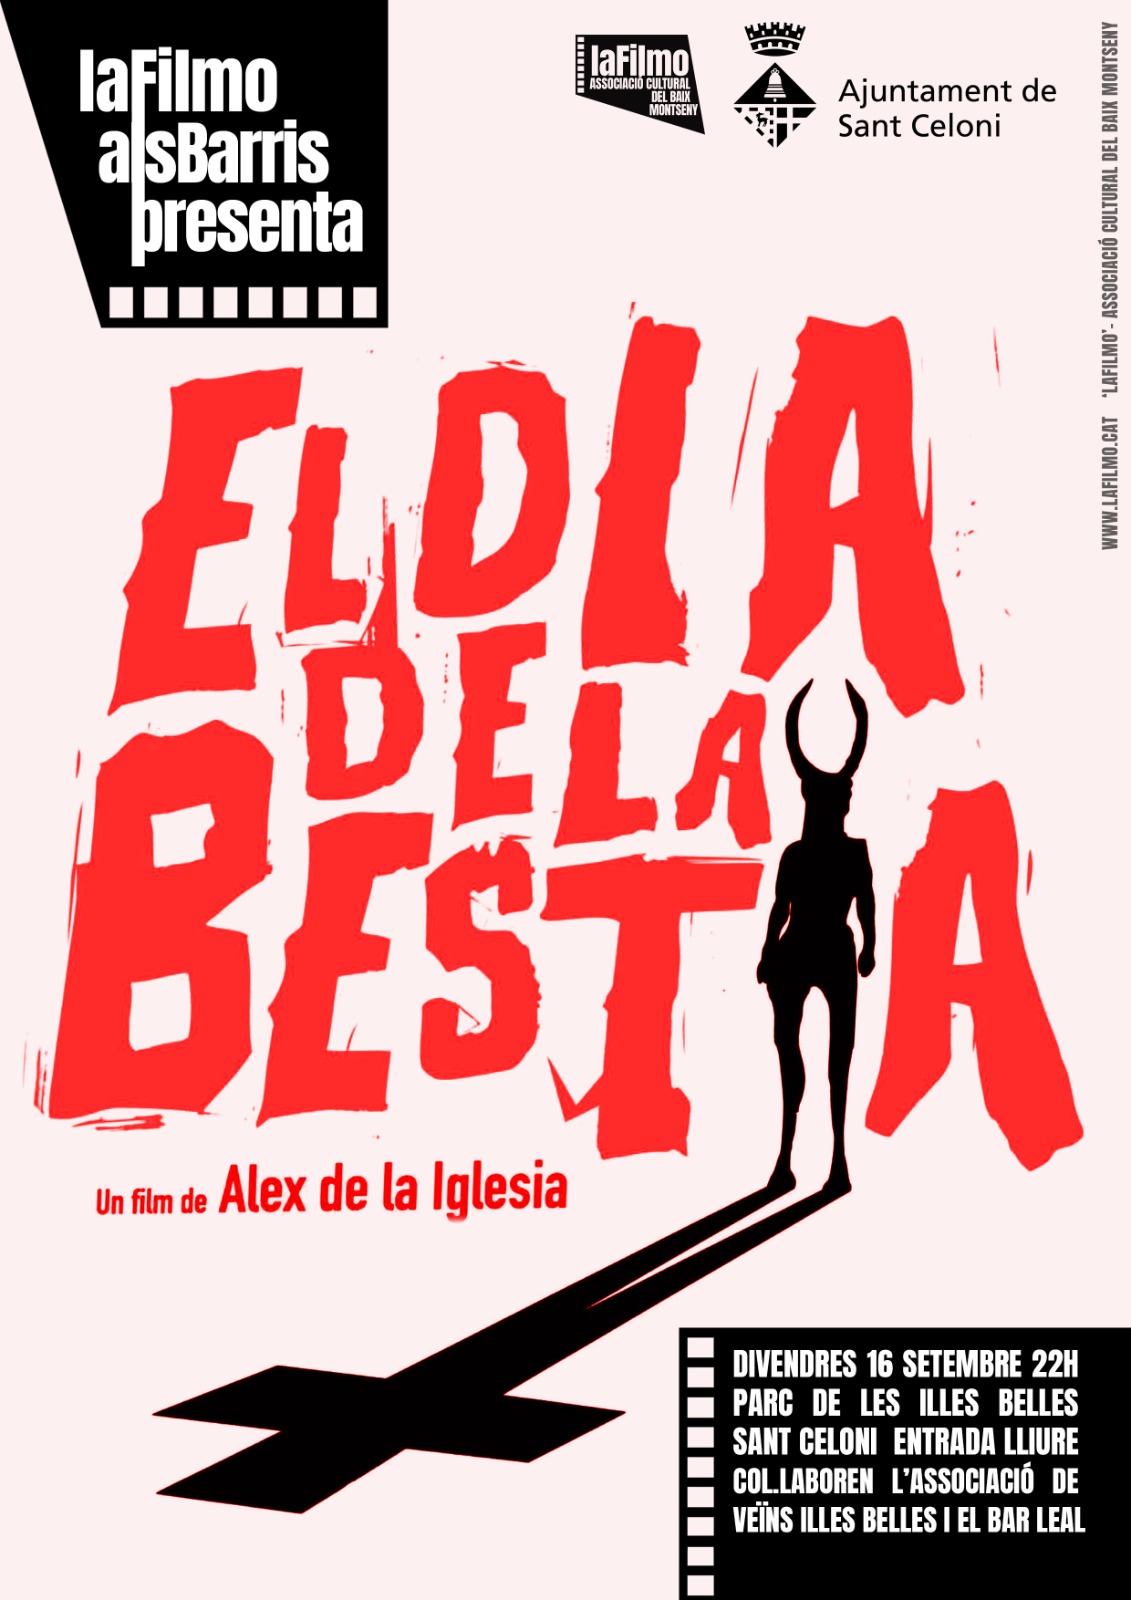 El_dia_de_la_bestia_a_laFilmo